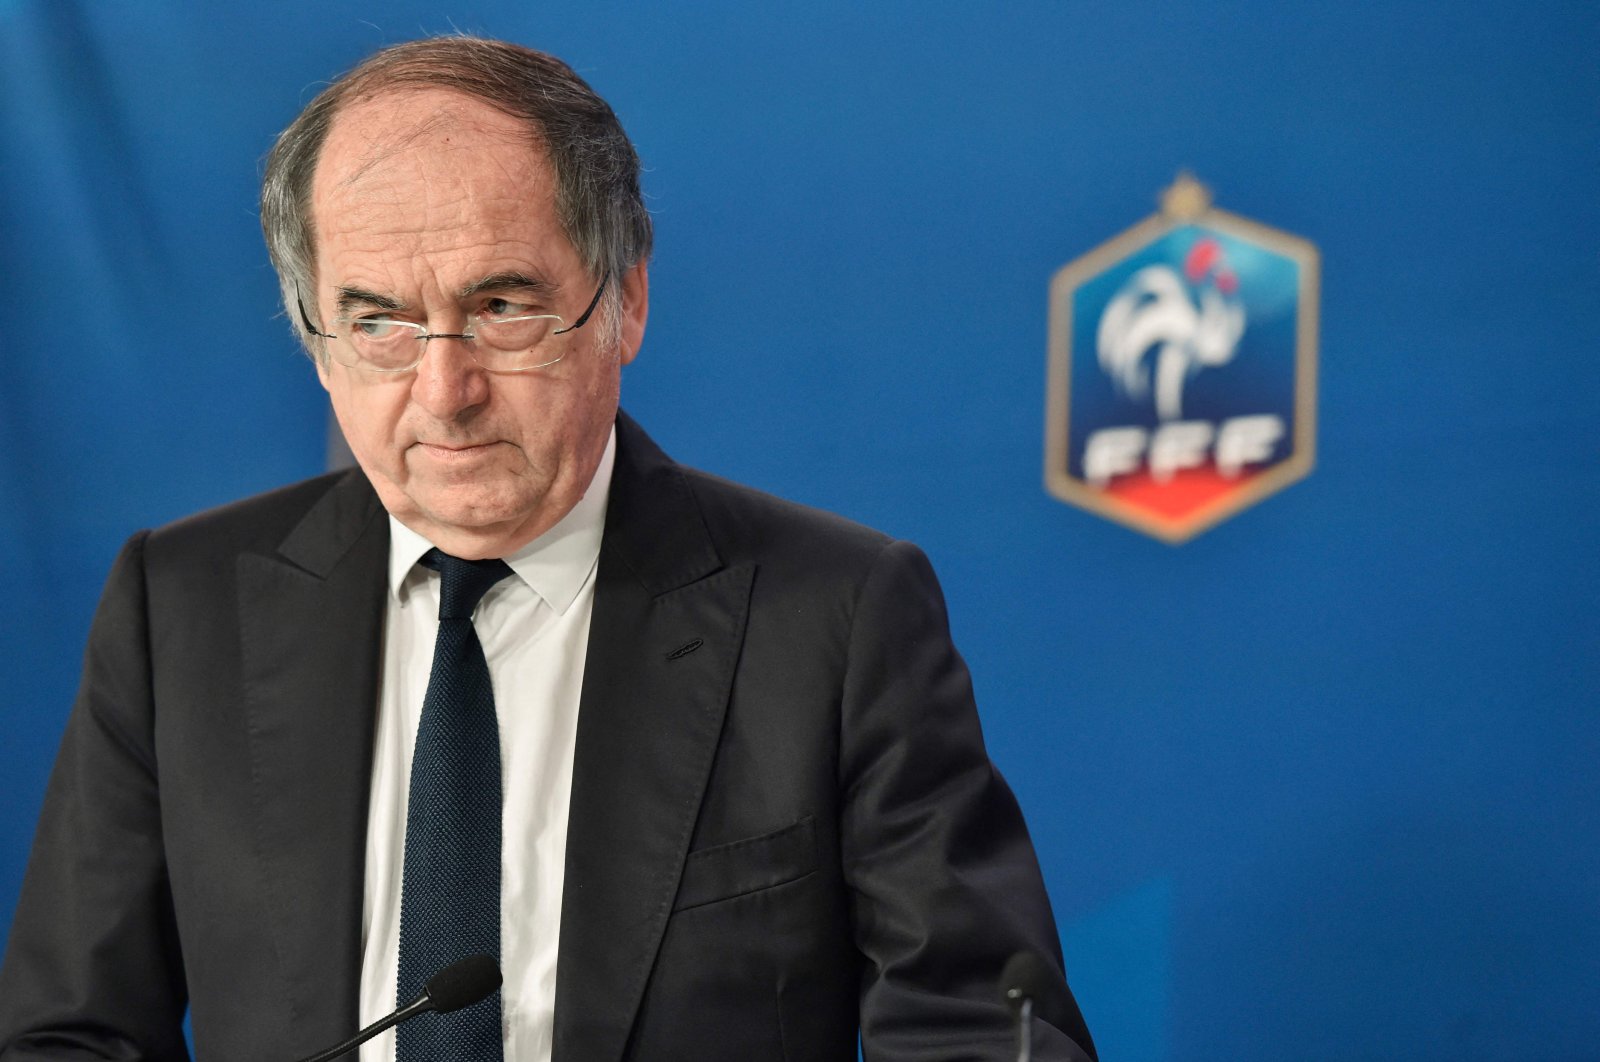 Audit mengecam bos sepak bola Prancis Le Graet atas pelecehan yang mengerikan